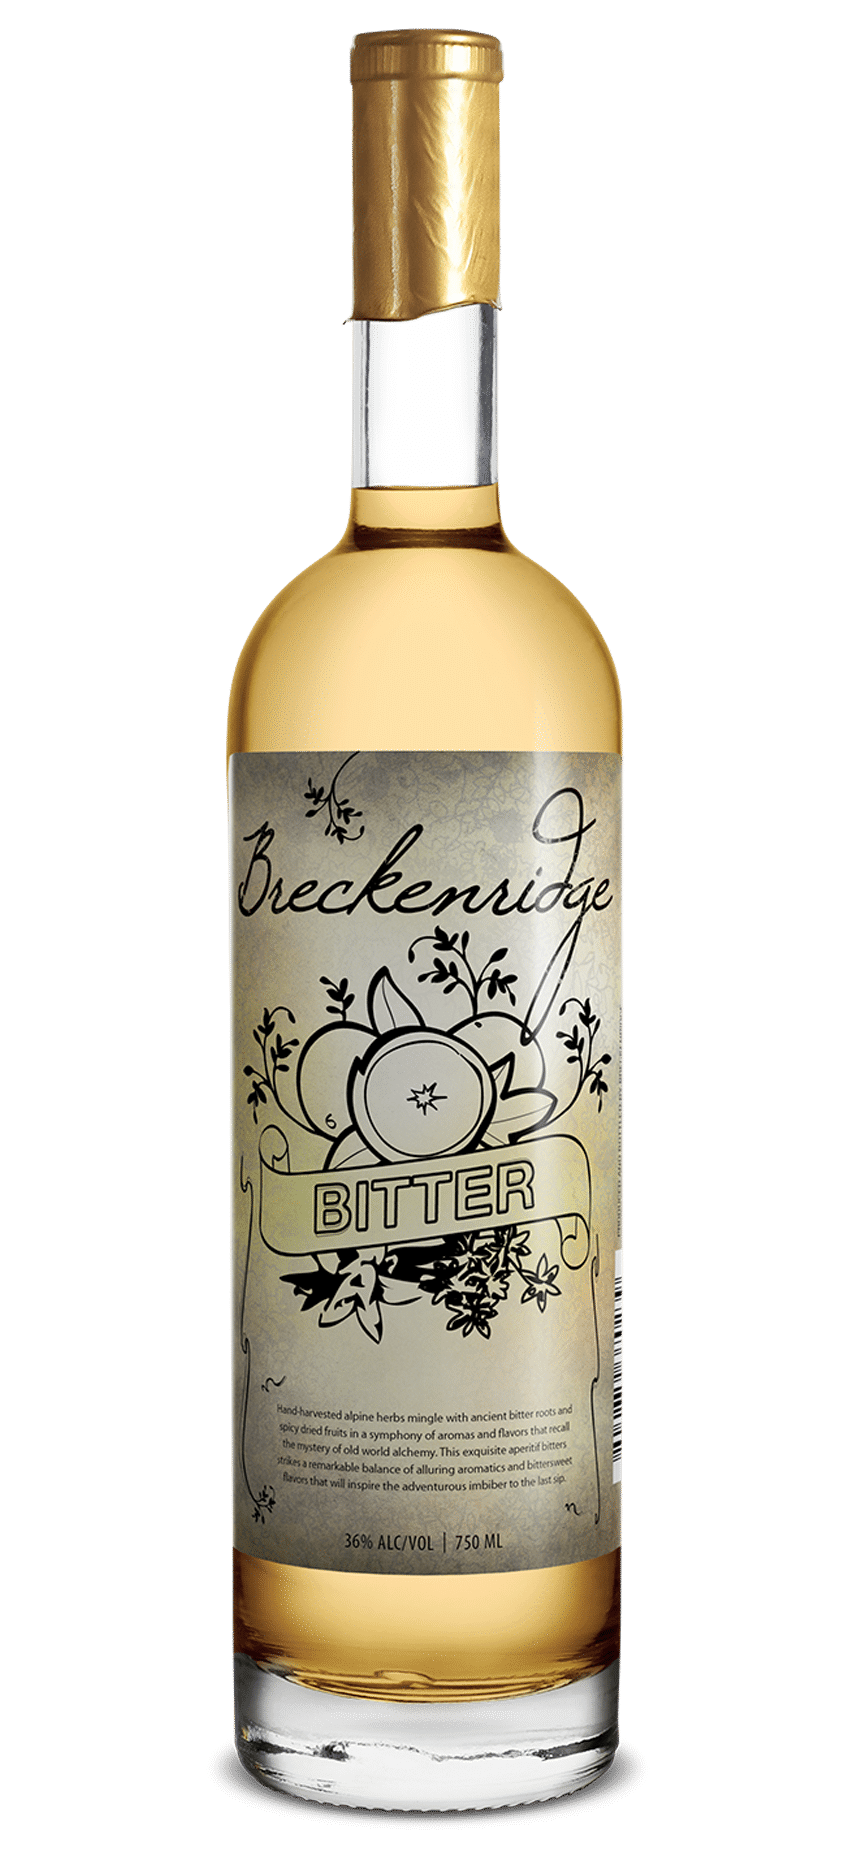 Breckenridge Bitter bottle 750 mL